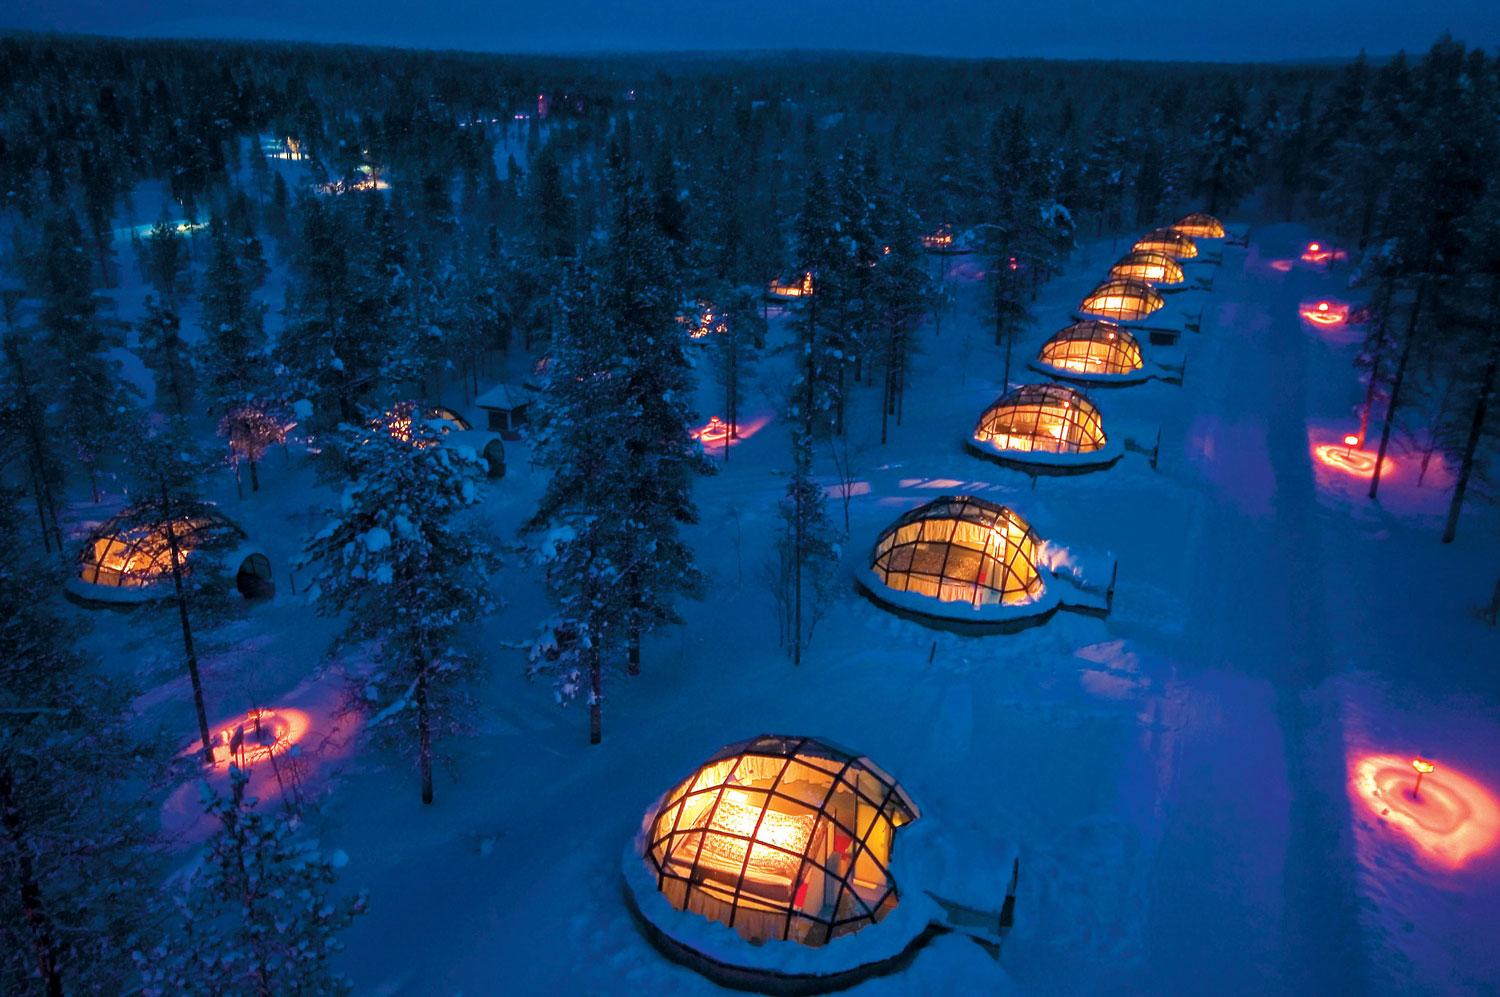 Hotel Kakslauttanen ligger i Inari, i det finska Lappland, mitt i ett av världens mest fantastiska och orörda landskap. Här bor man i en glasigloo där man kan ligga och titta upp på norrskenet.